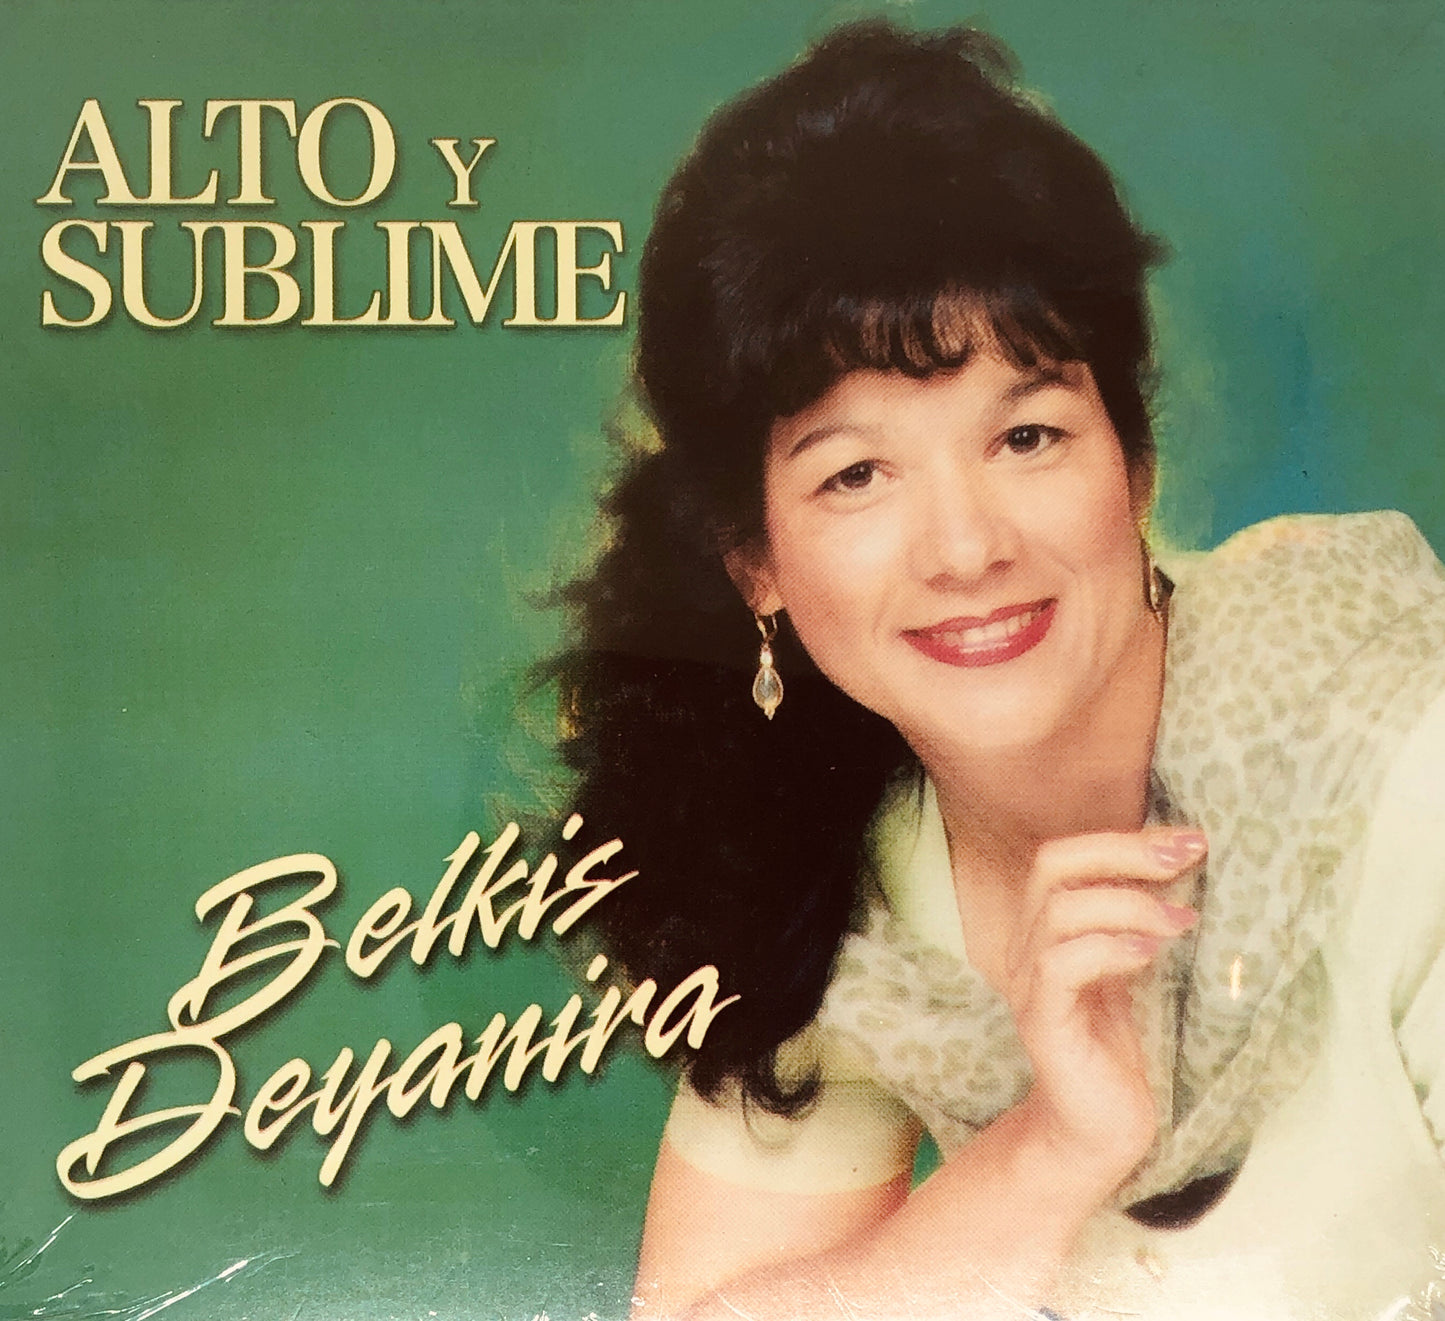 CD - Alto y Sublime - Belkis Deyanira